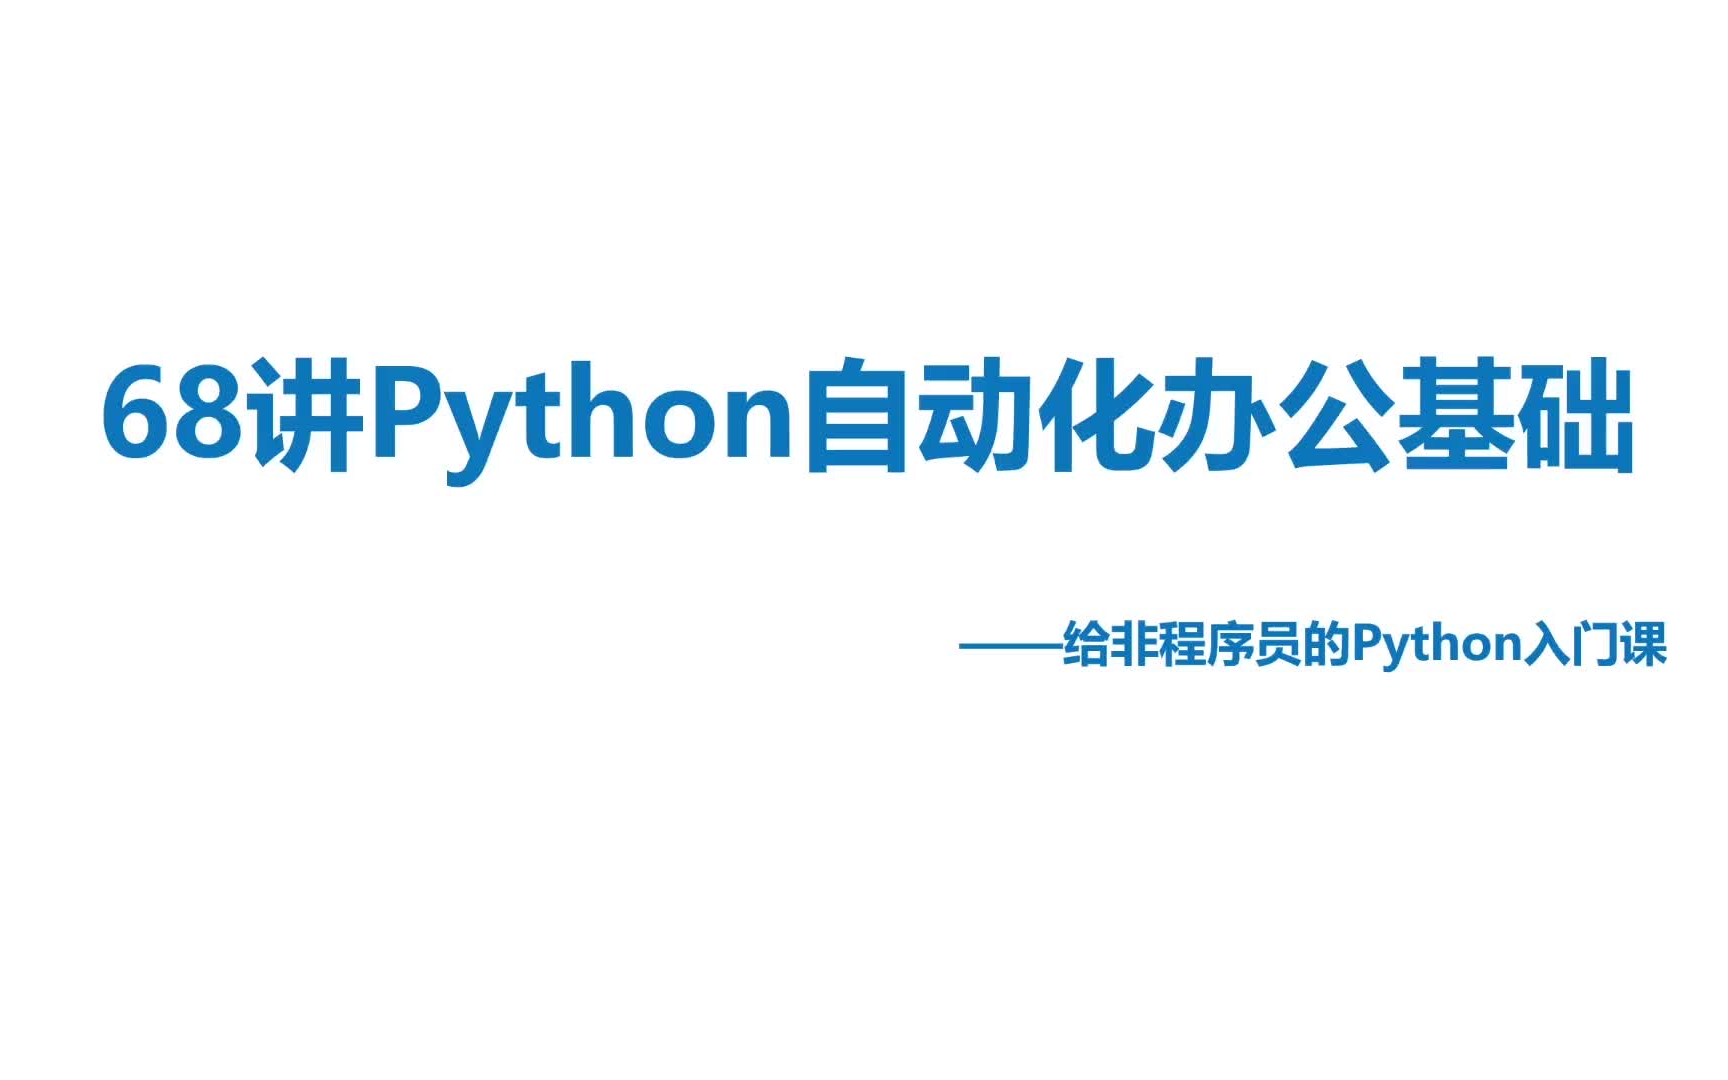 68讲Python自动化办公基础教程（结合Excel讲解，每周更新）